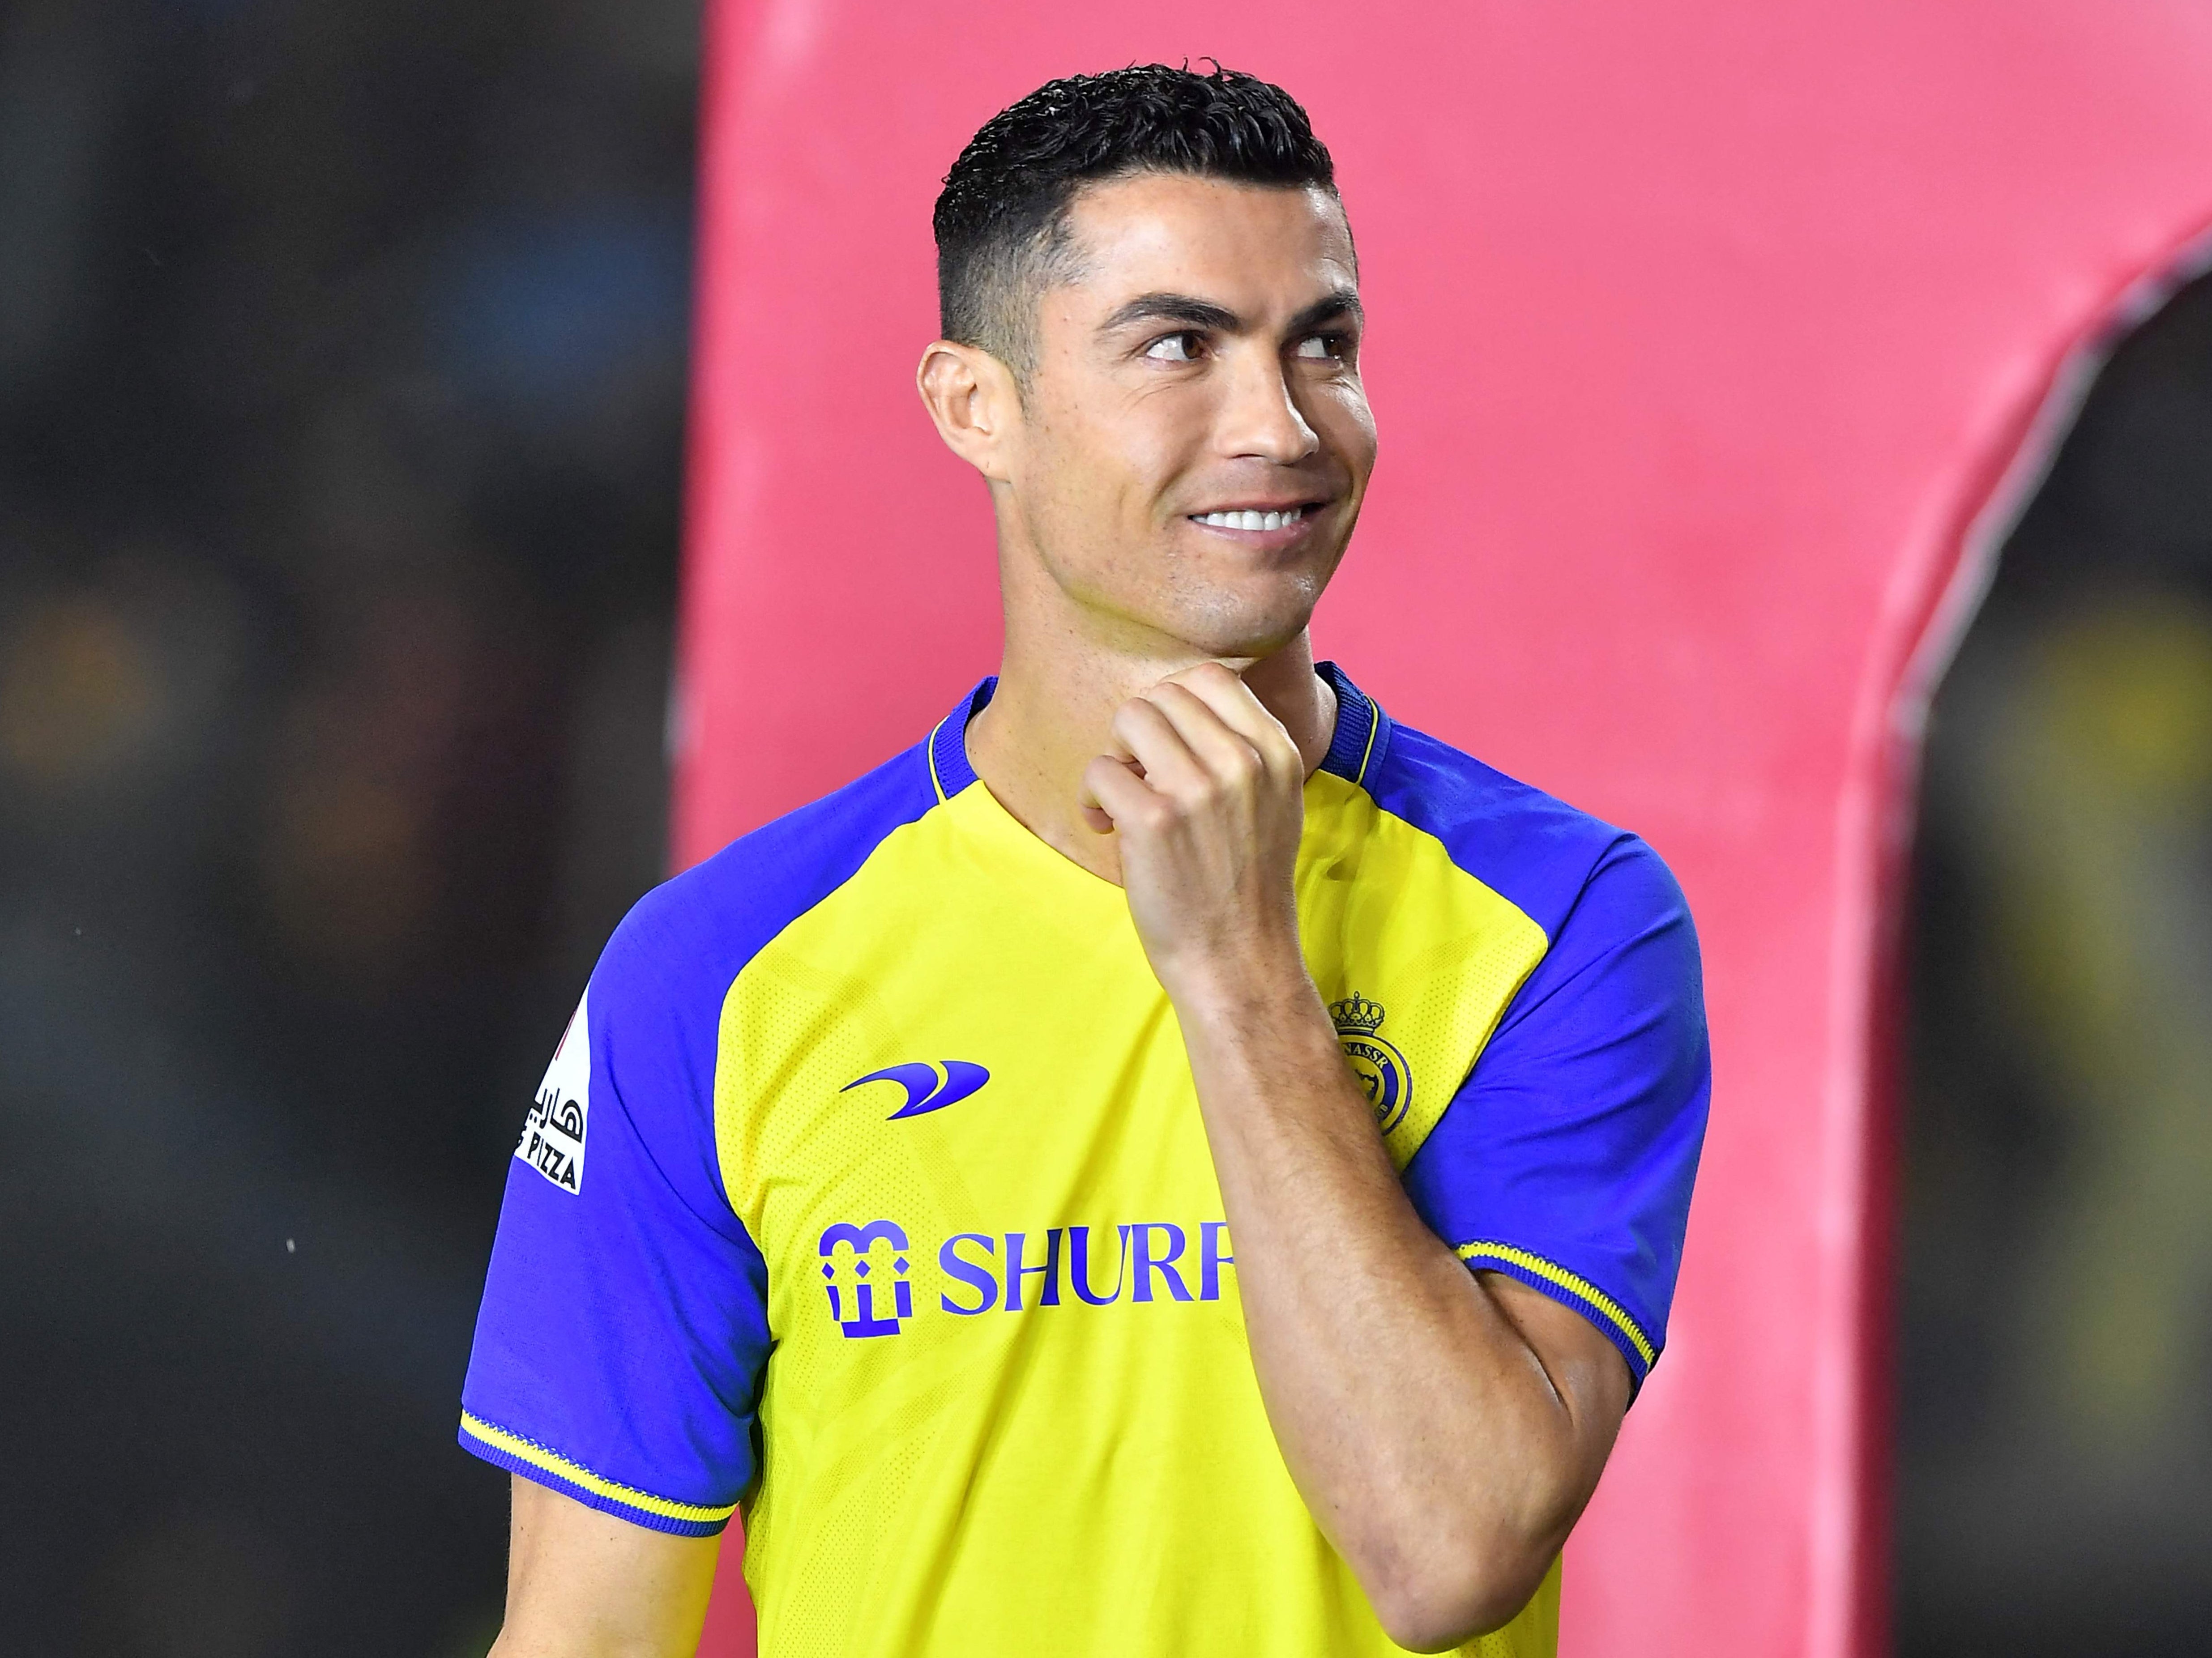 Cristiano Ronaldo turns back on Europe for ‘unique’ contract in Saudi Arabia